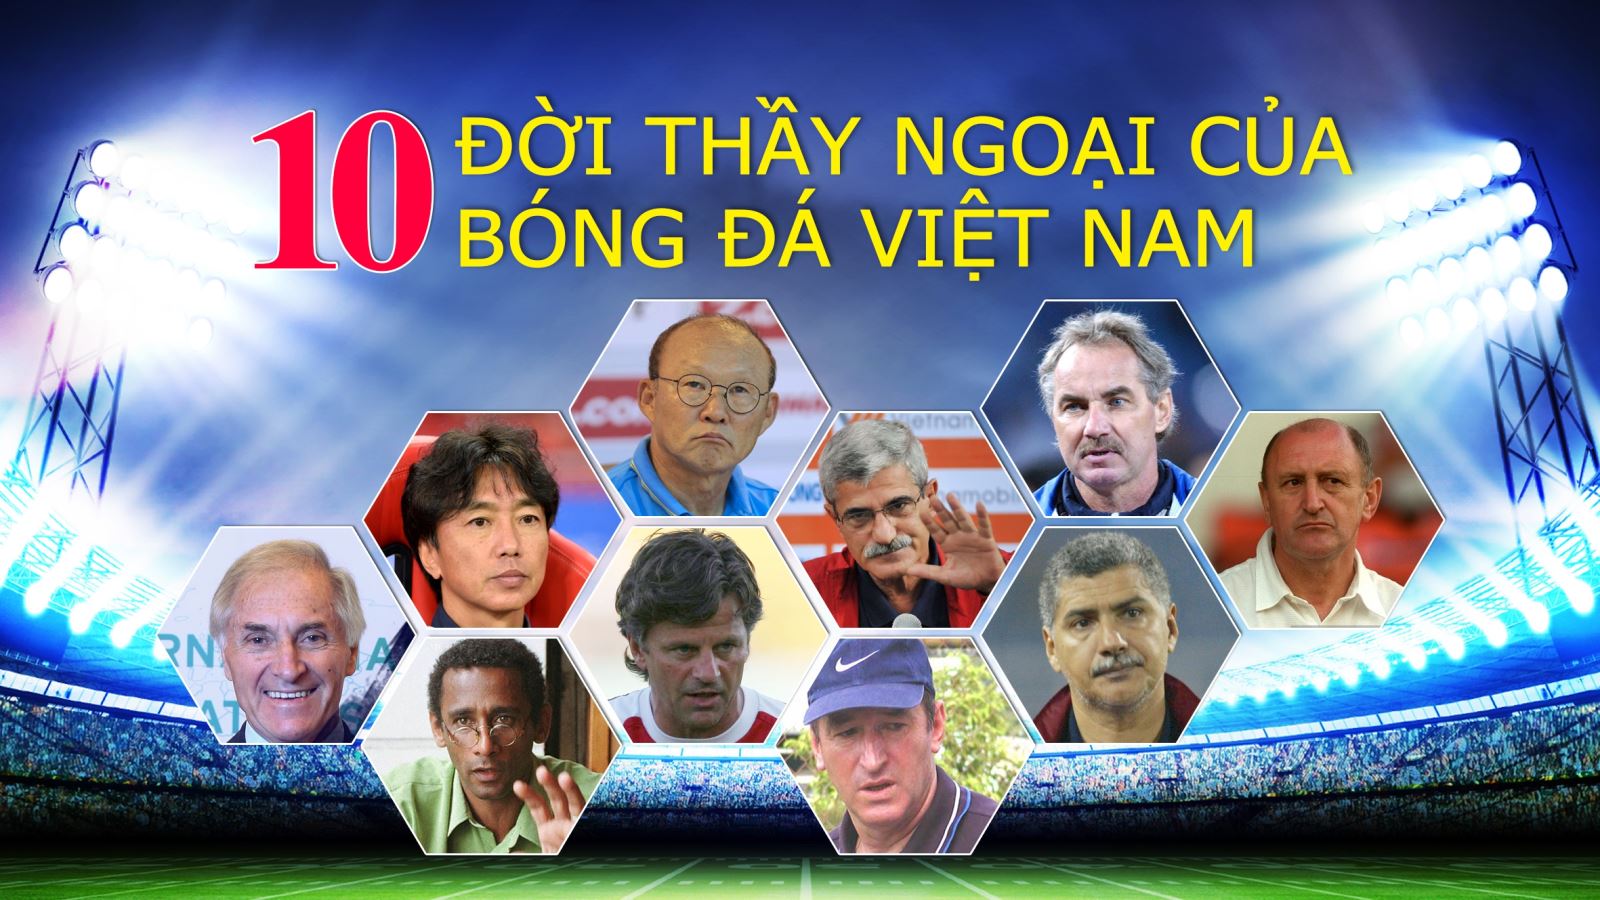 10 đời thầy ngoại của bóng đá Việt Nam